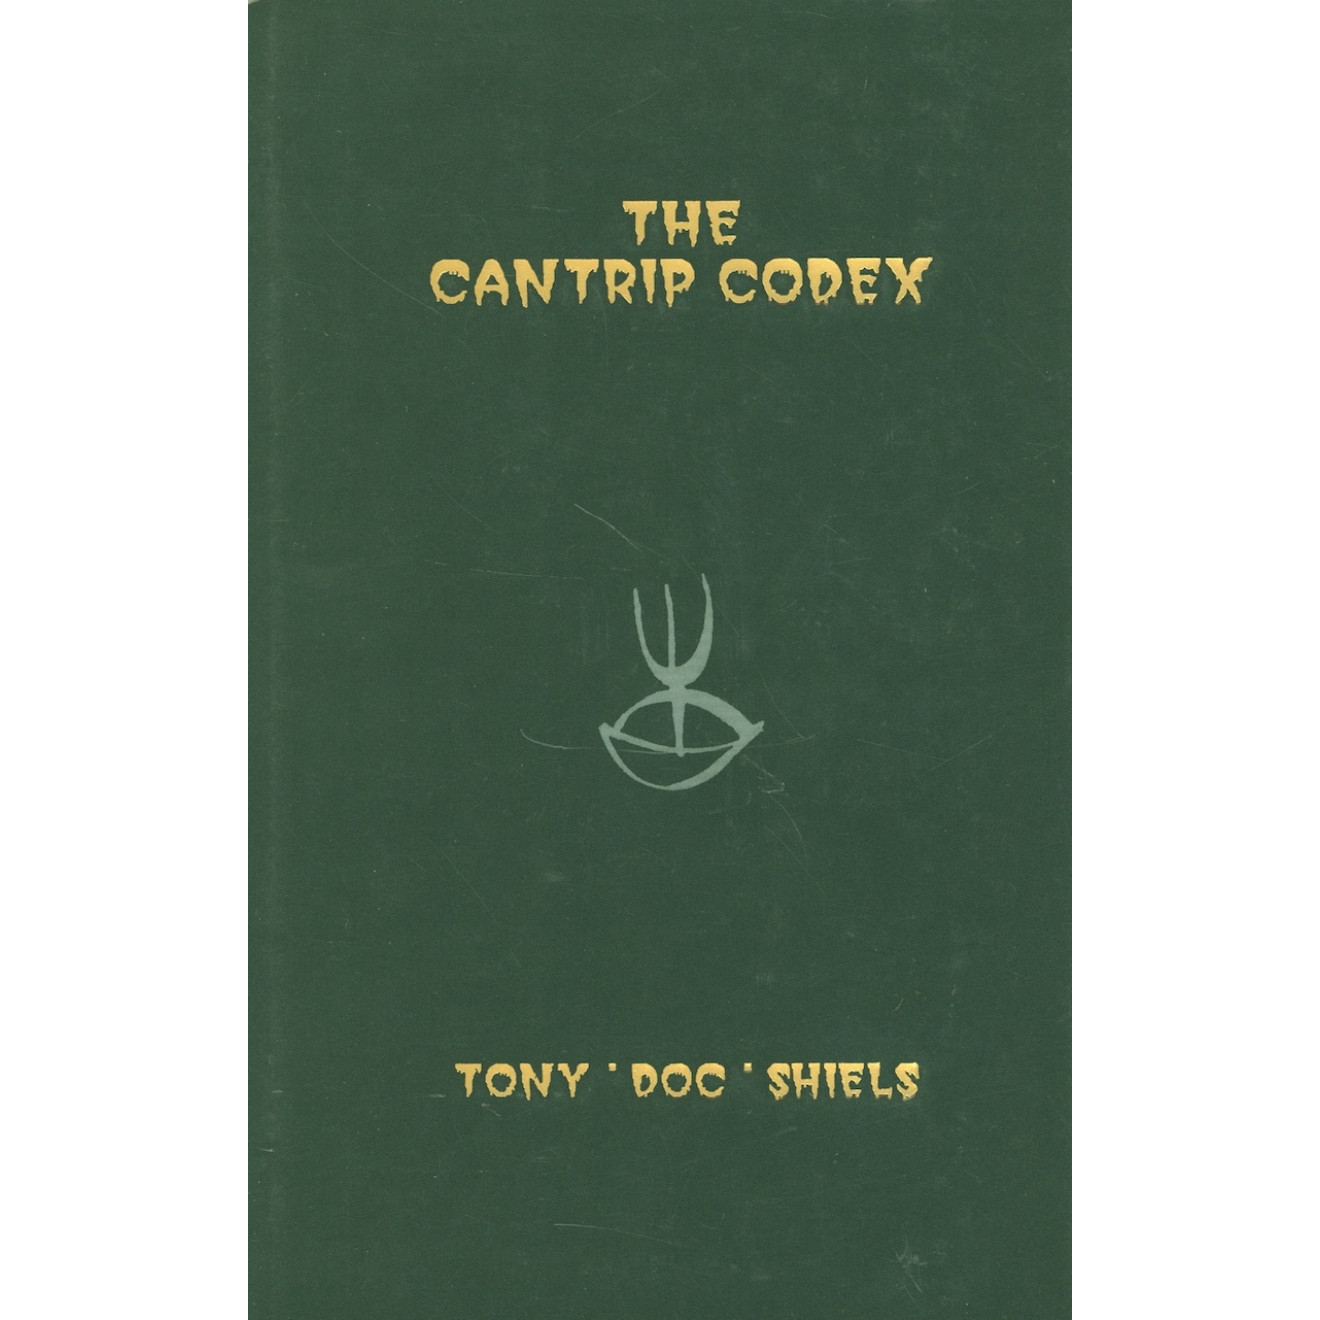 The Cantrip Codex